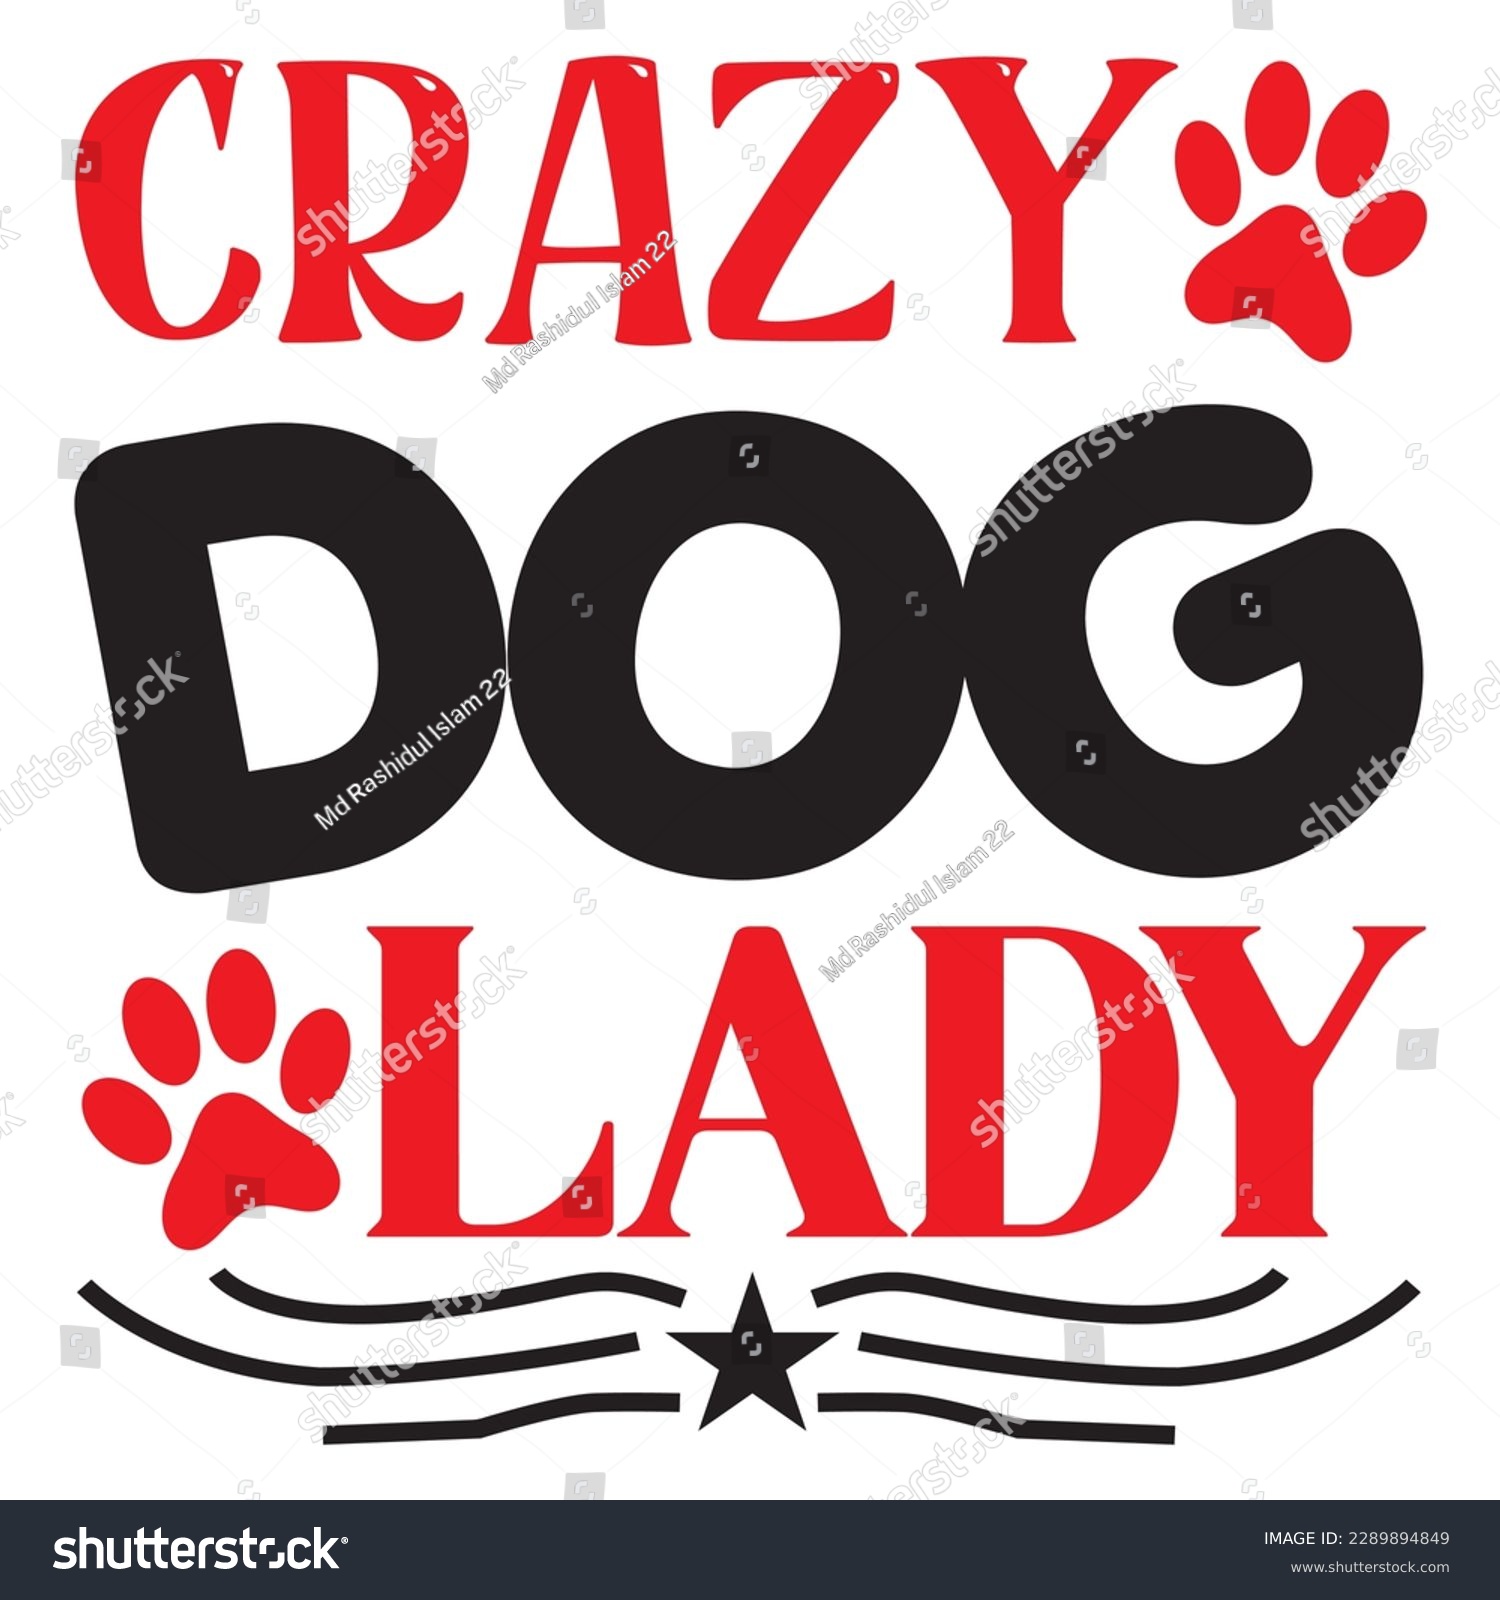 SVG of Crazy Dog Lady SVG Design Vector File. svg